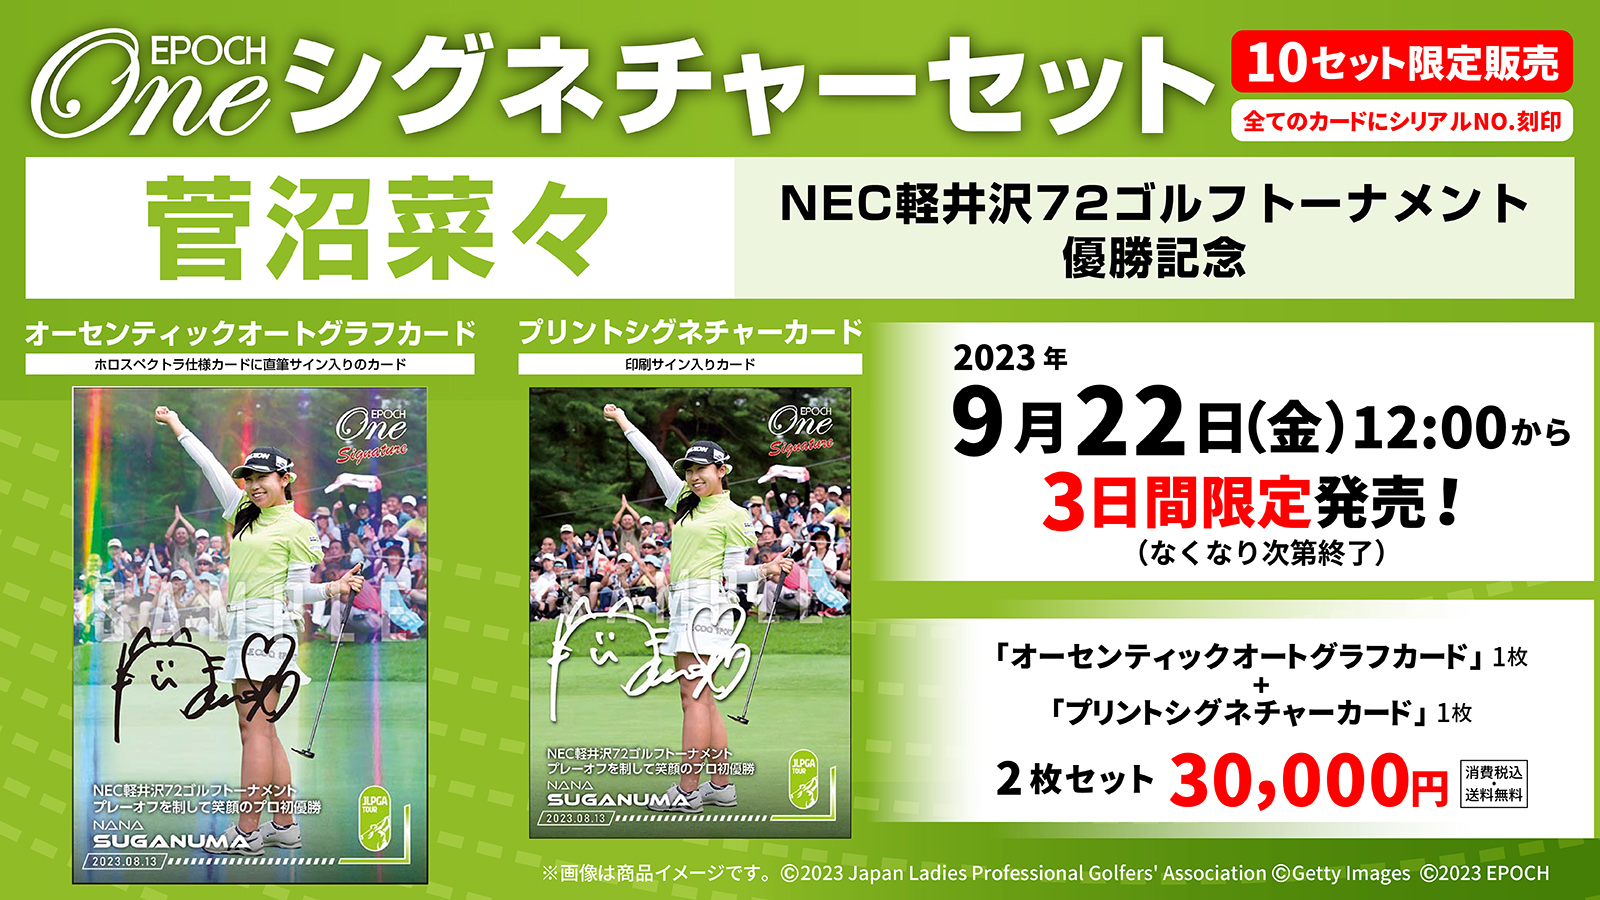 【菅沼菜々】シグネチャーセット『NEC軽井沢72ゴルフトーナメント 優勝記念』